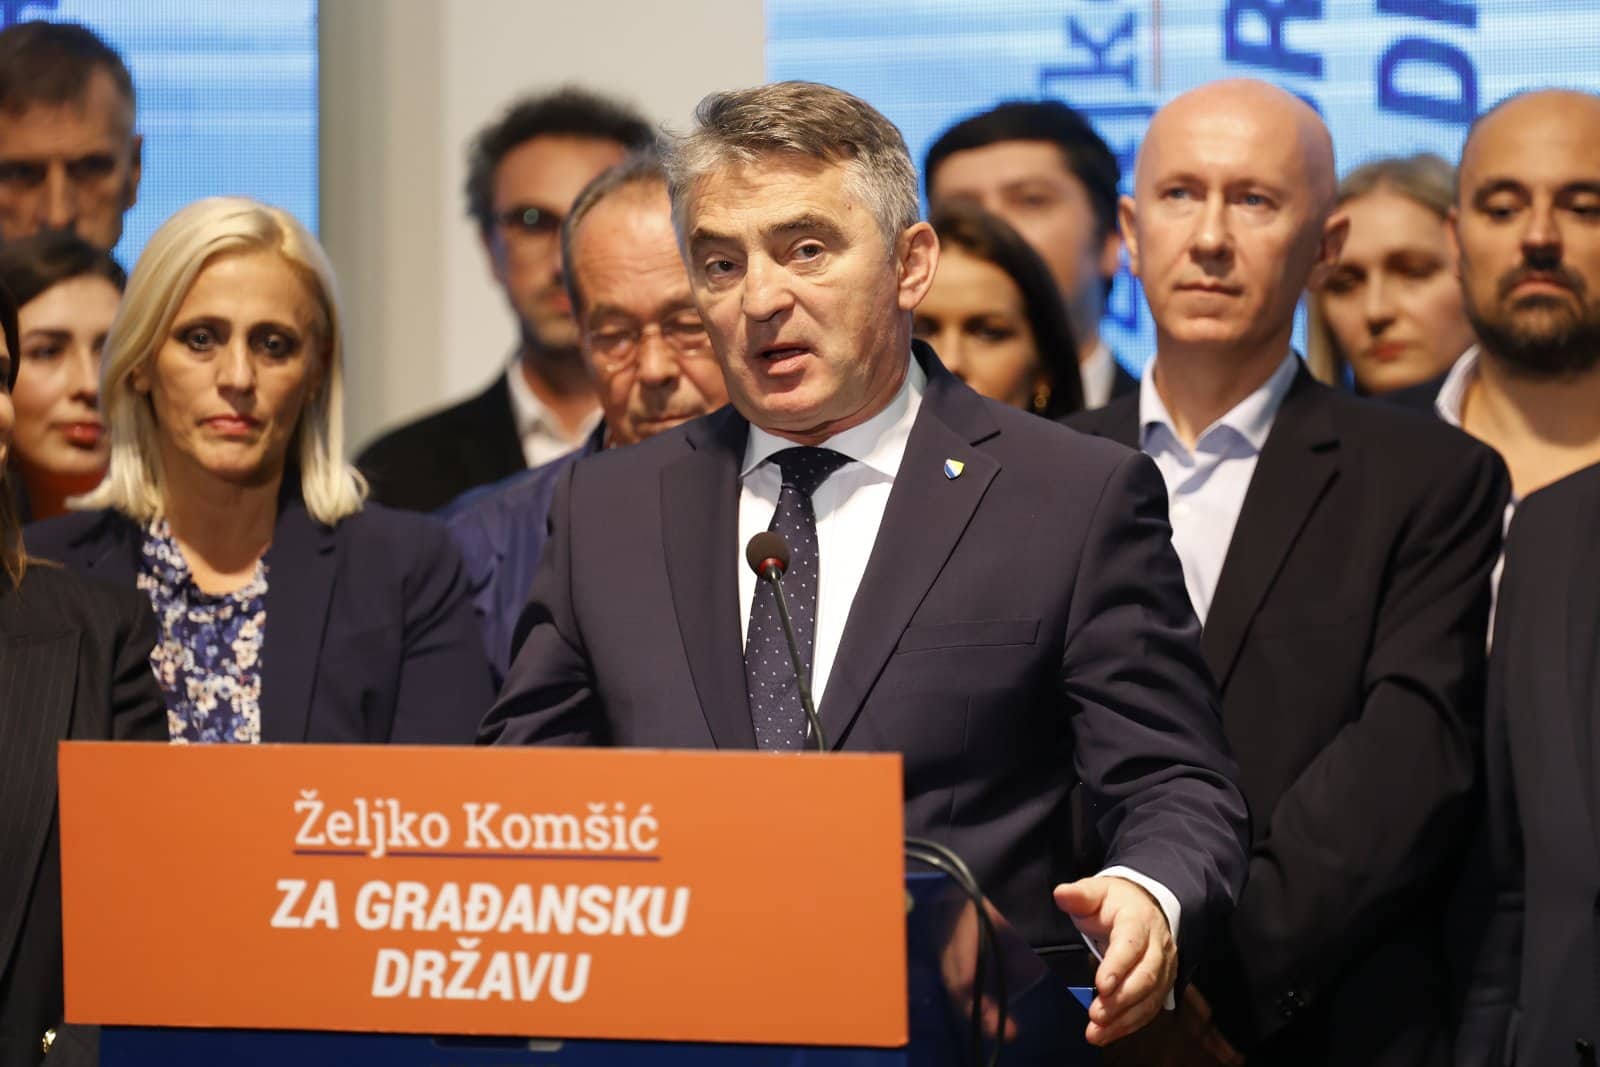 Komšićev DF treba izbrisati s liste ljevice i tretirati kao radikalnu desnu nacionalističku stranku